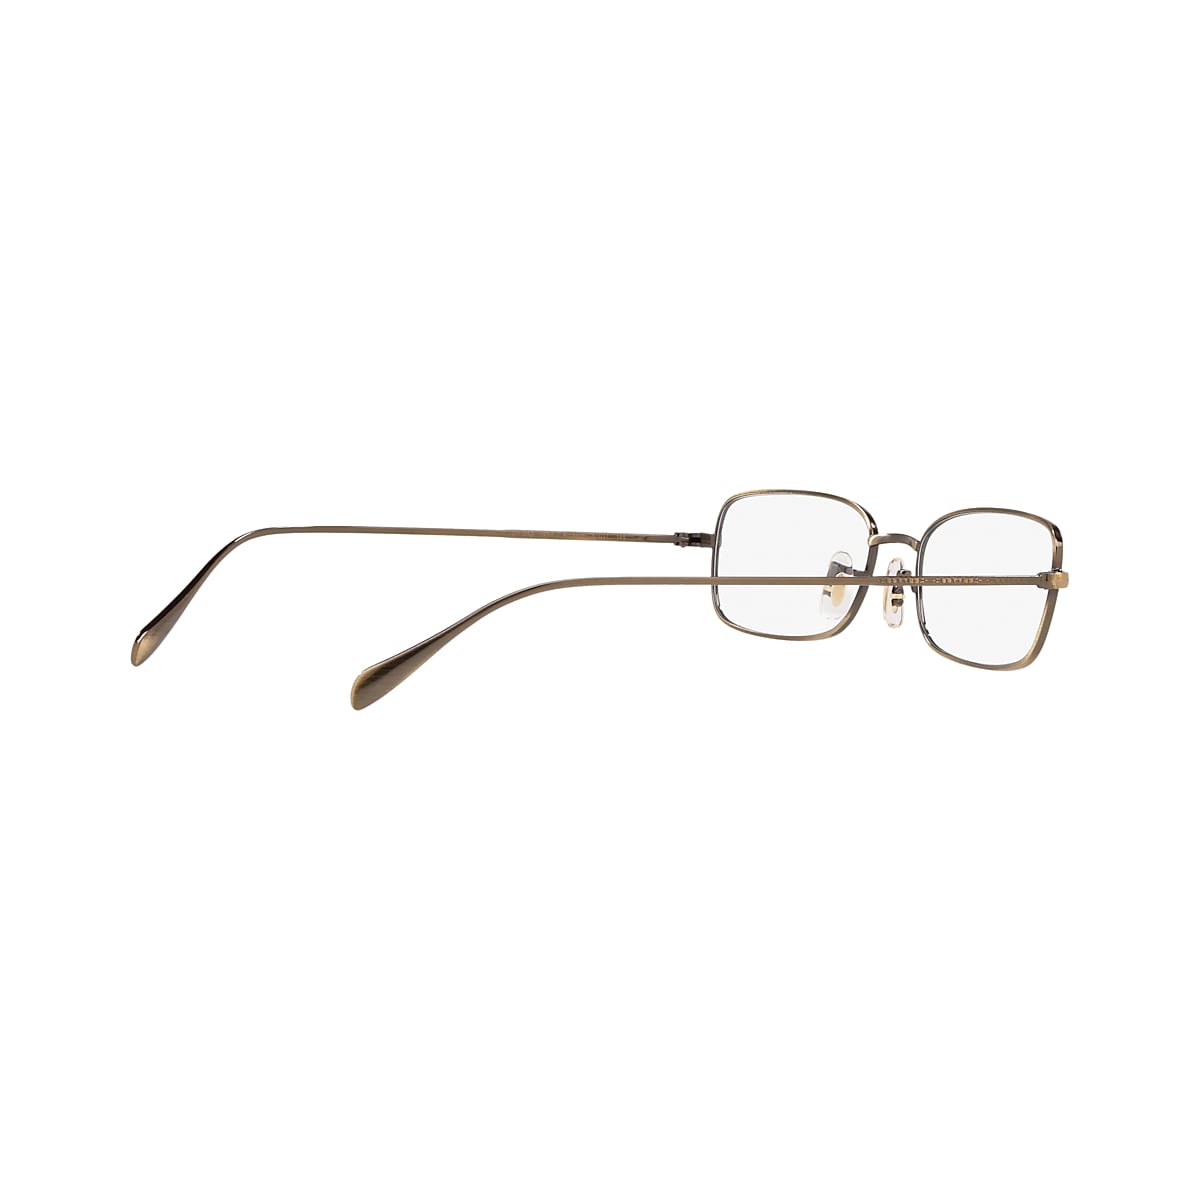 OV1253 Eyeglasses New Antique Gold | Oliver Peoples USA